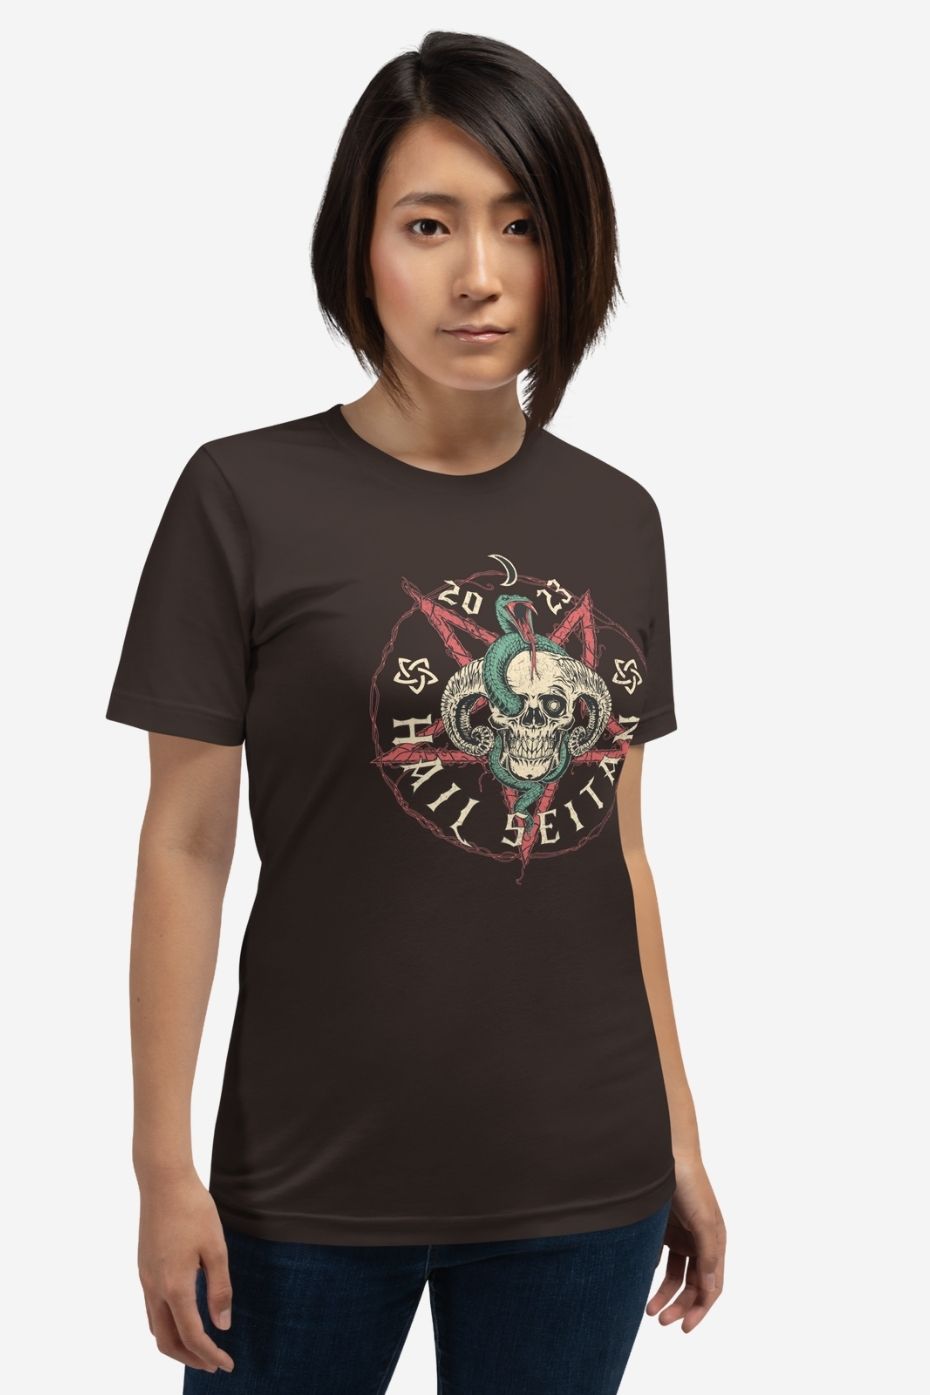 Hail Seitan - Unisex t-shirt